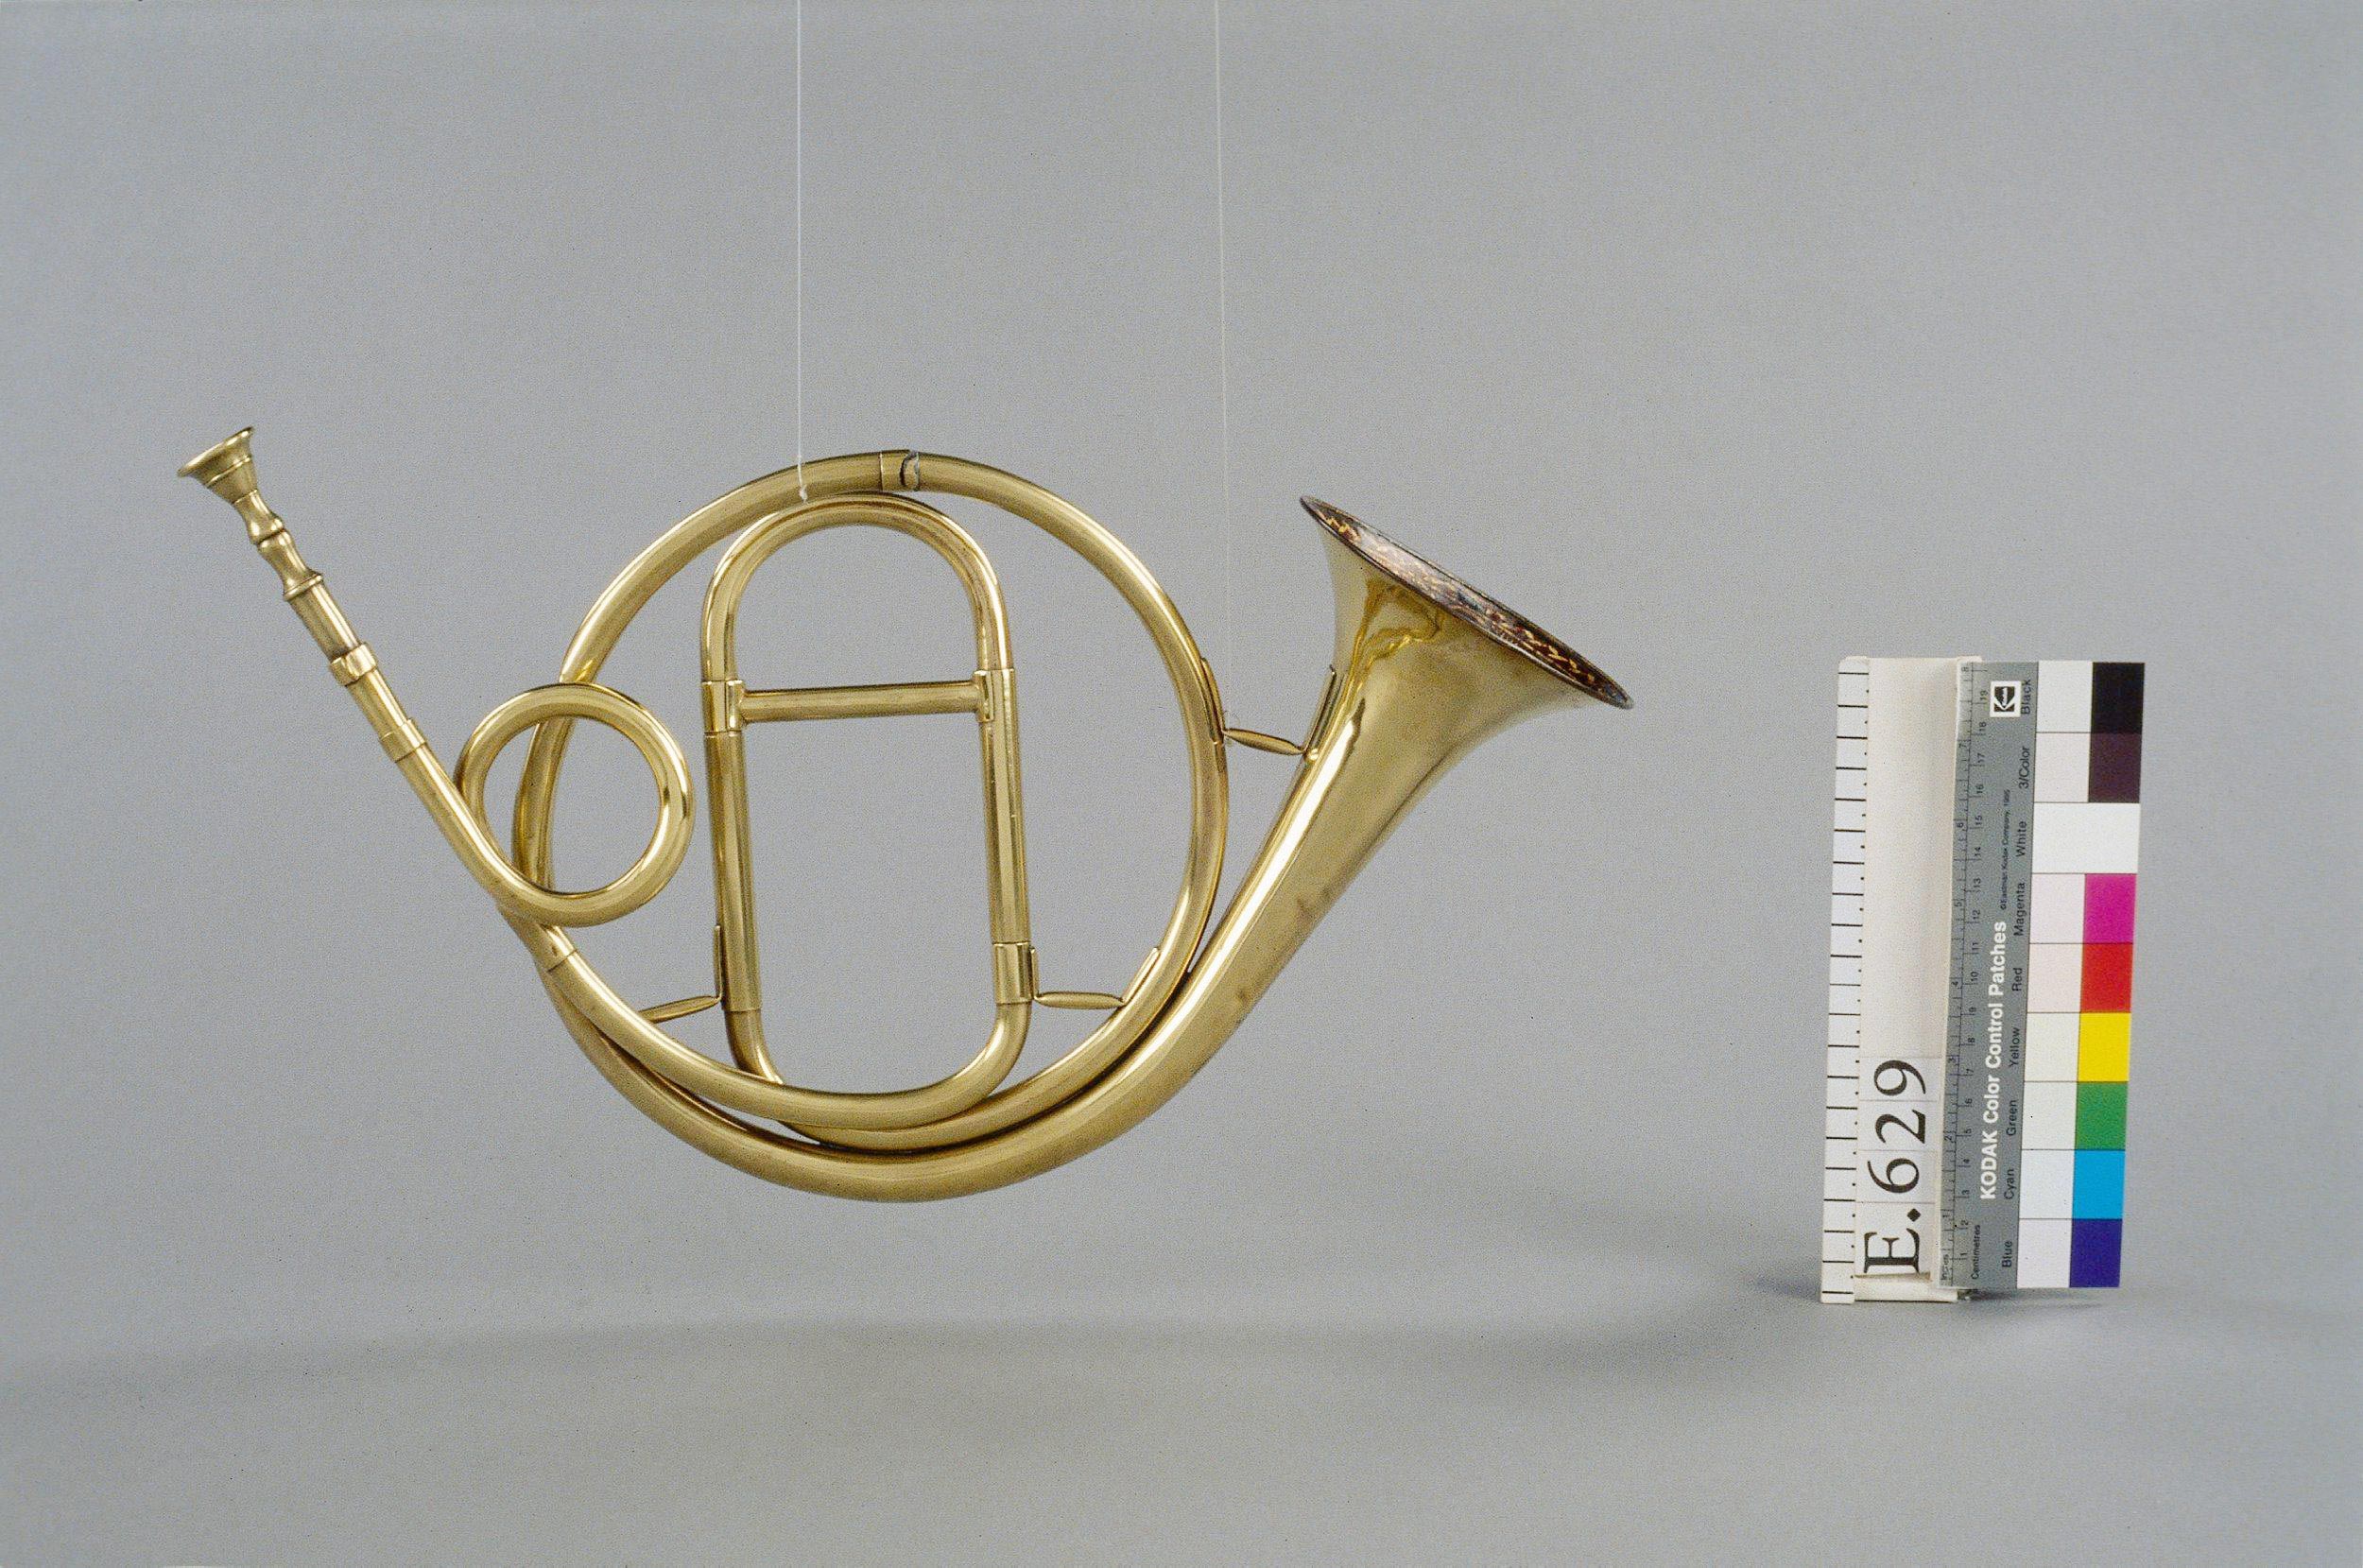 Courtois Frère, Trompette naturelle en sol, forme circulaire, vers 1825, Musée de la Musique, Paris © Thierry Ollivier